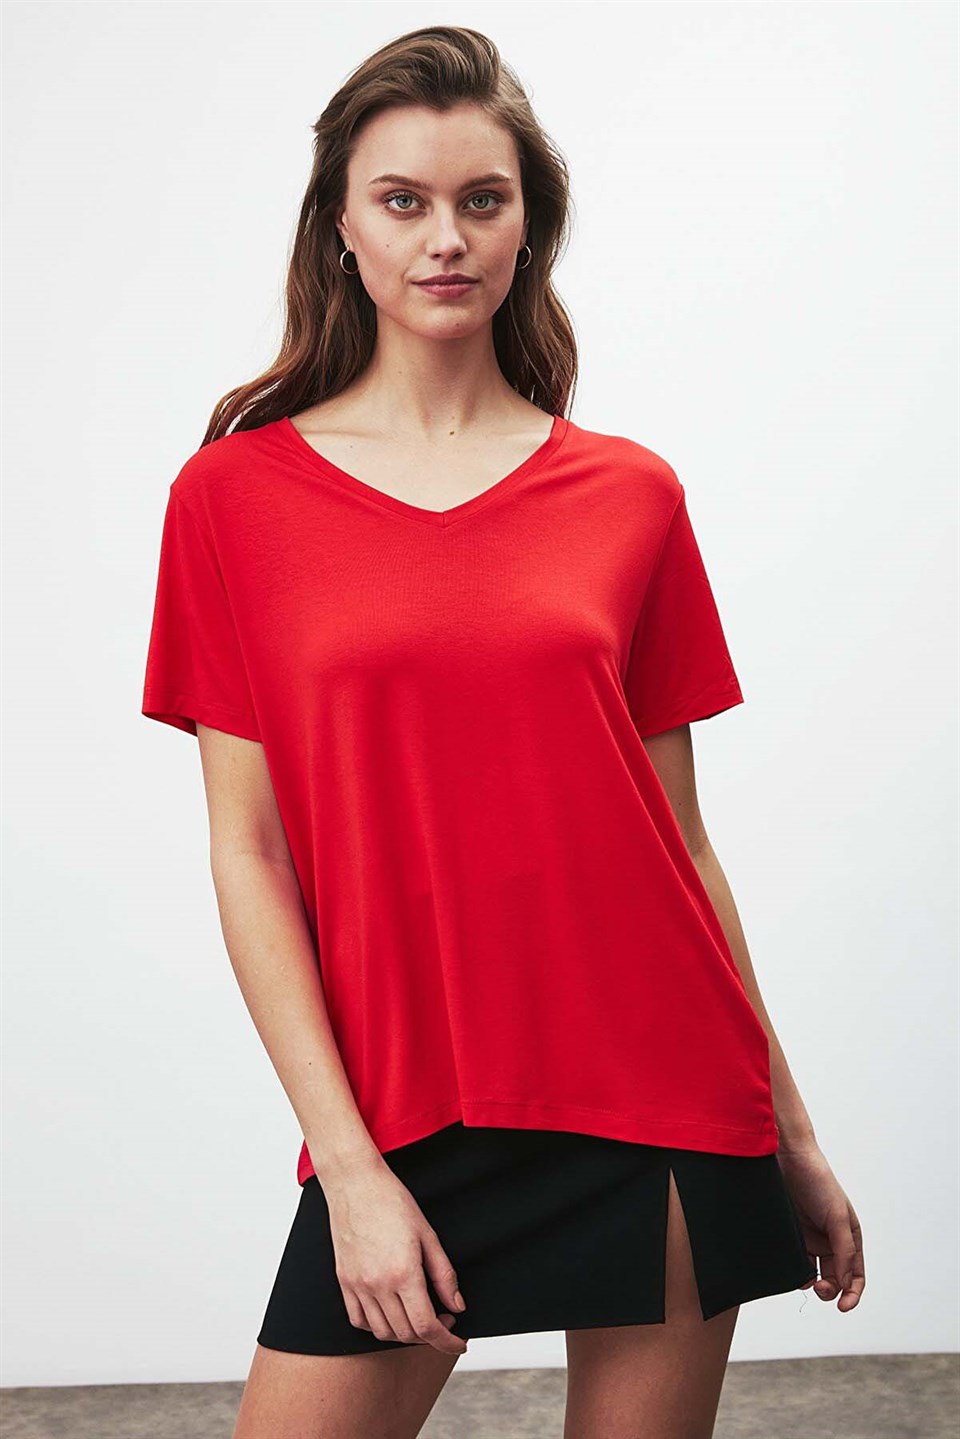 Kadın Düz Renk Tişört kategorisindeki giyim modelleri Grimelange'da!